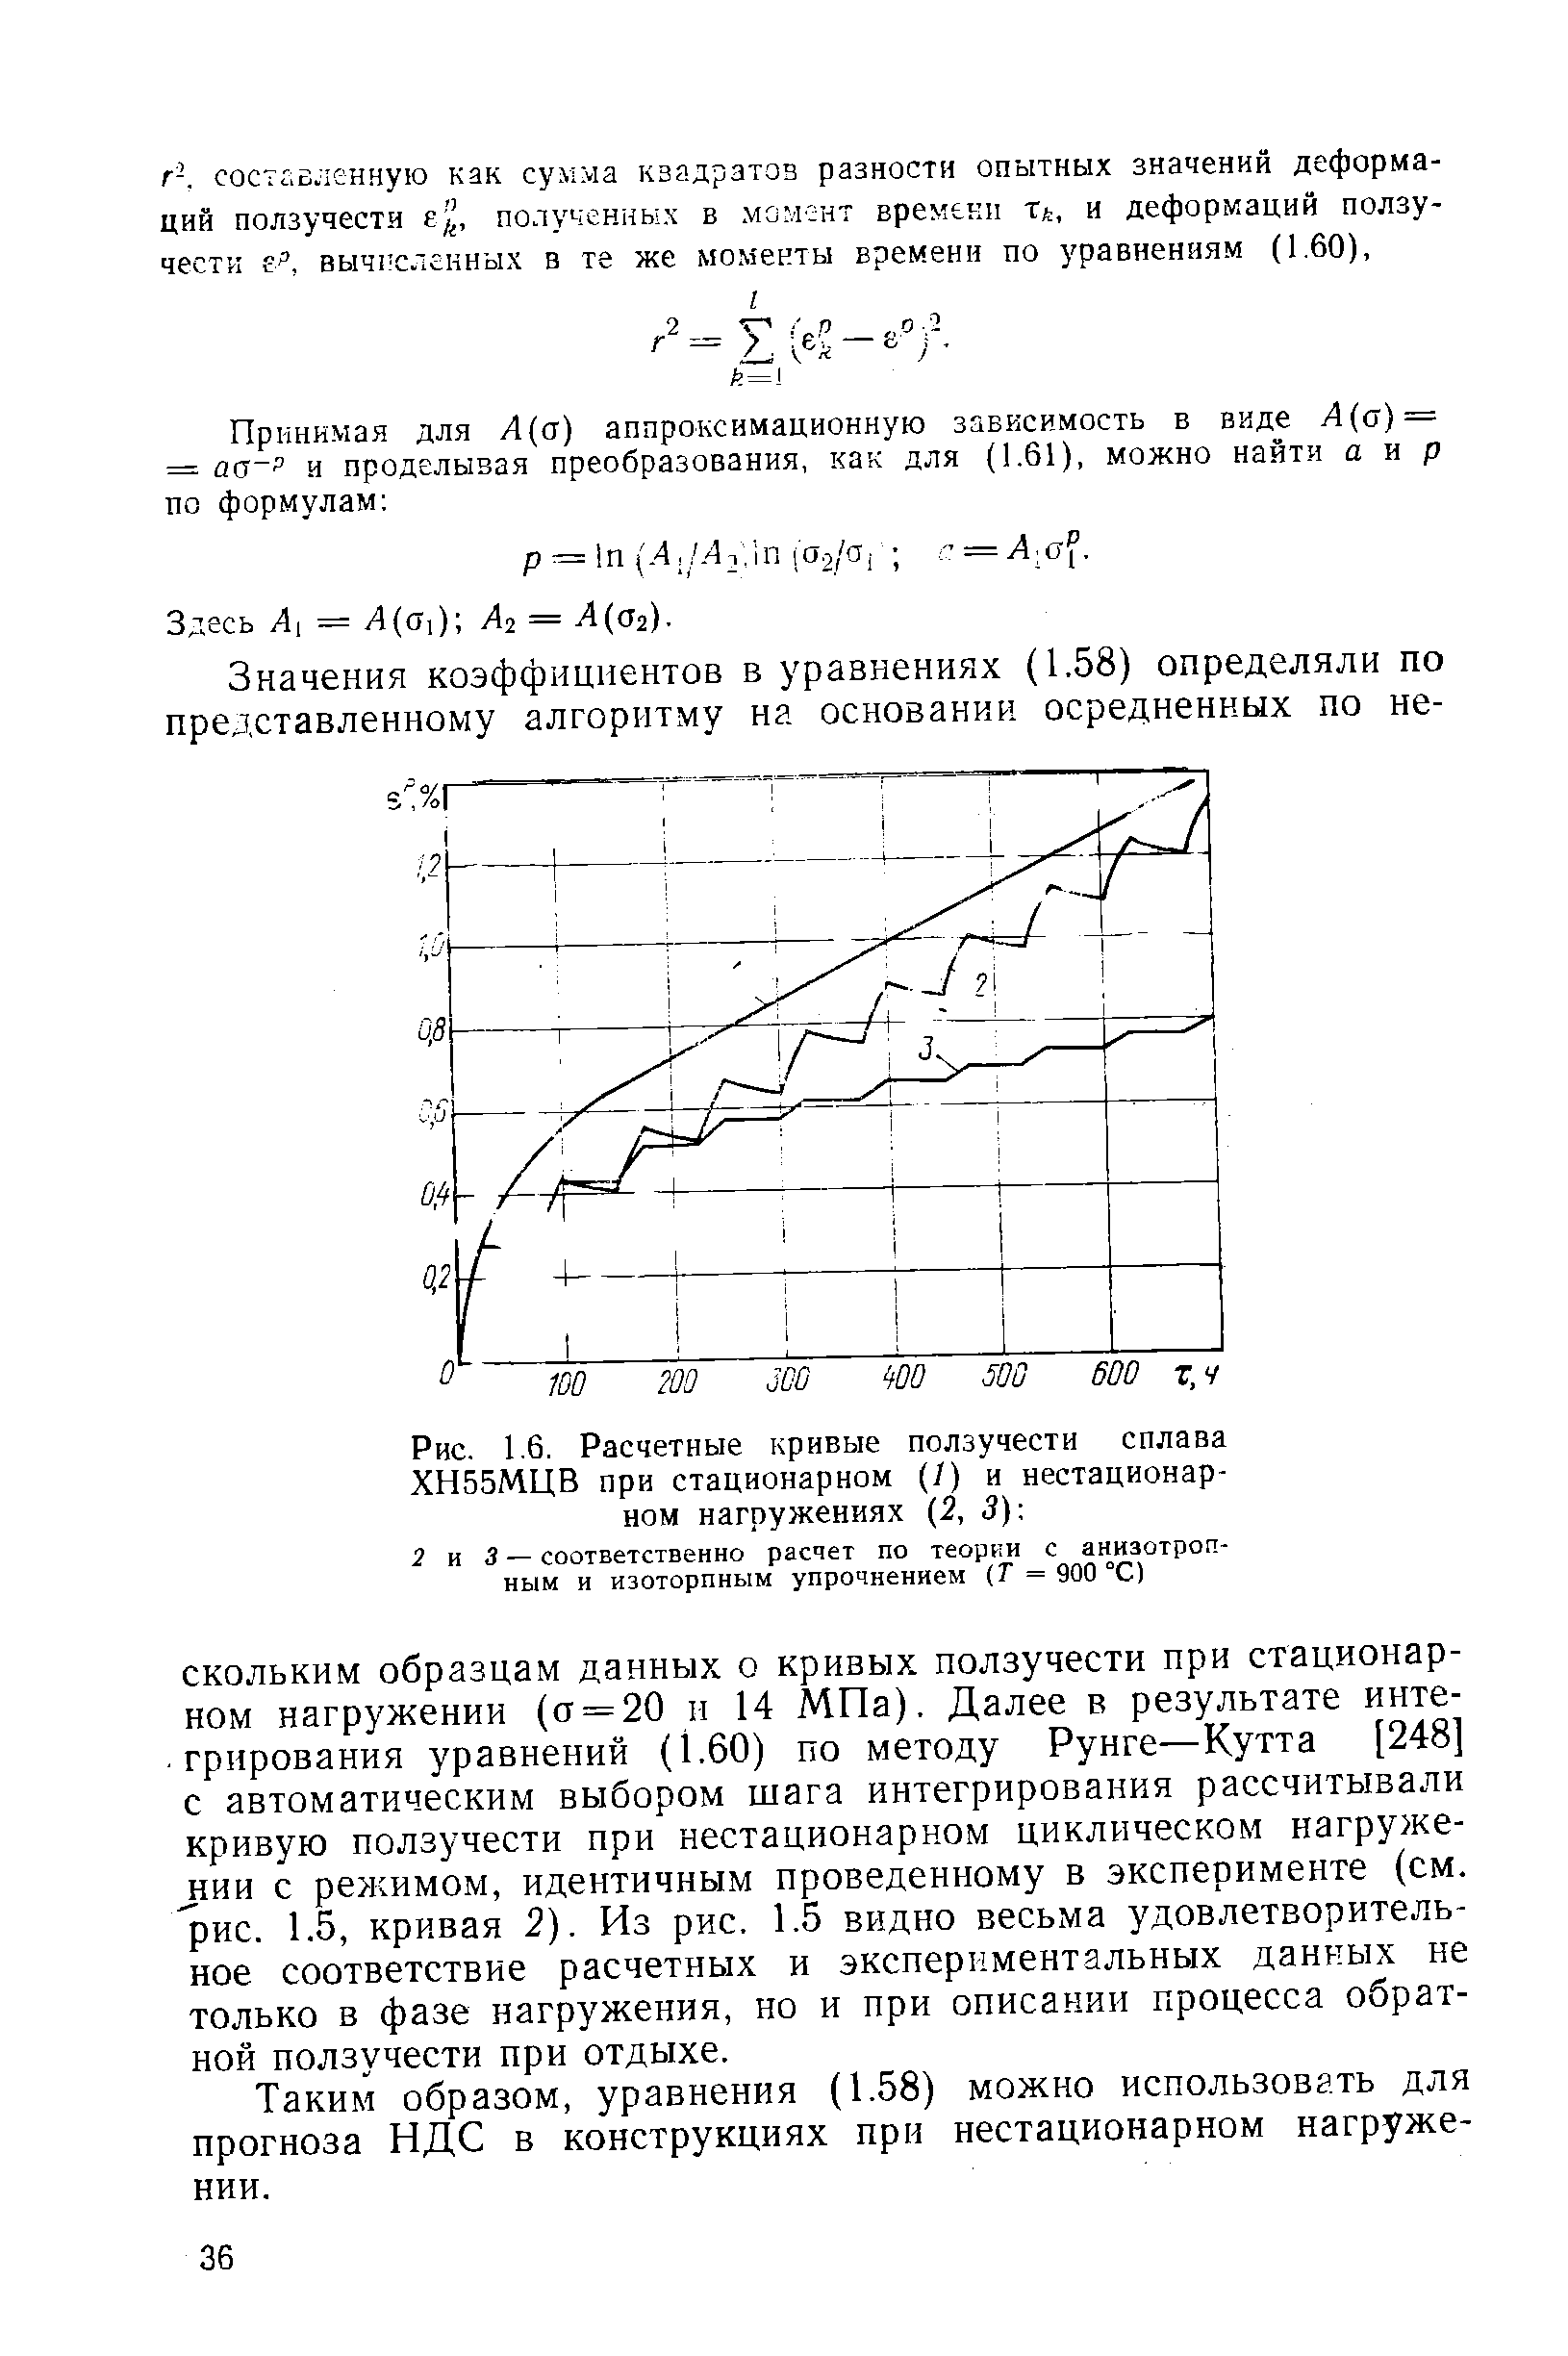 Рис. 1.6. Расчетные <a href="/info/383188">кривые ползучести сплава</a> ХН55МЦВ при стационарном (/) и нестационарном нагружениях (2, 3) 
